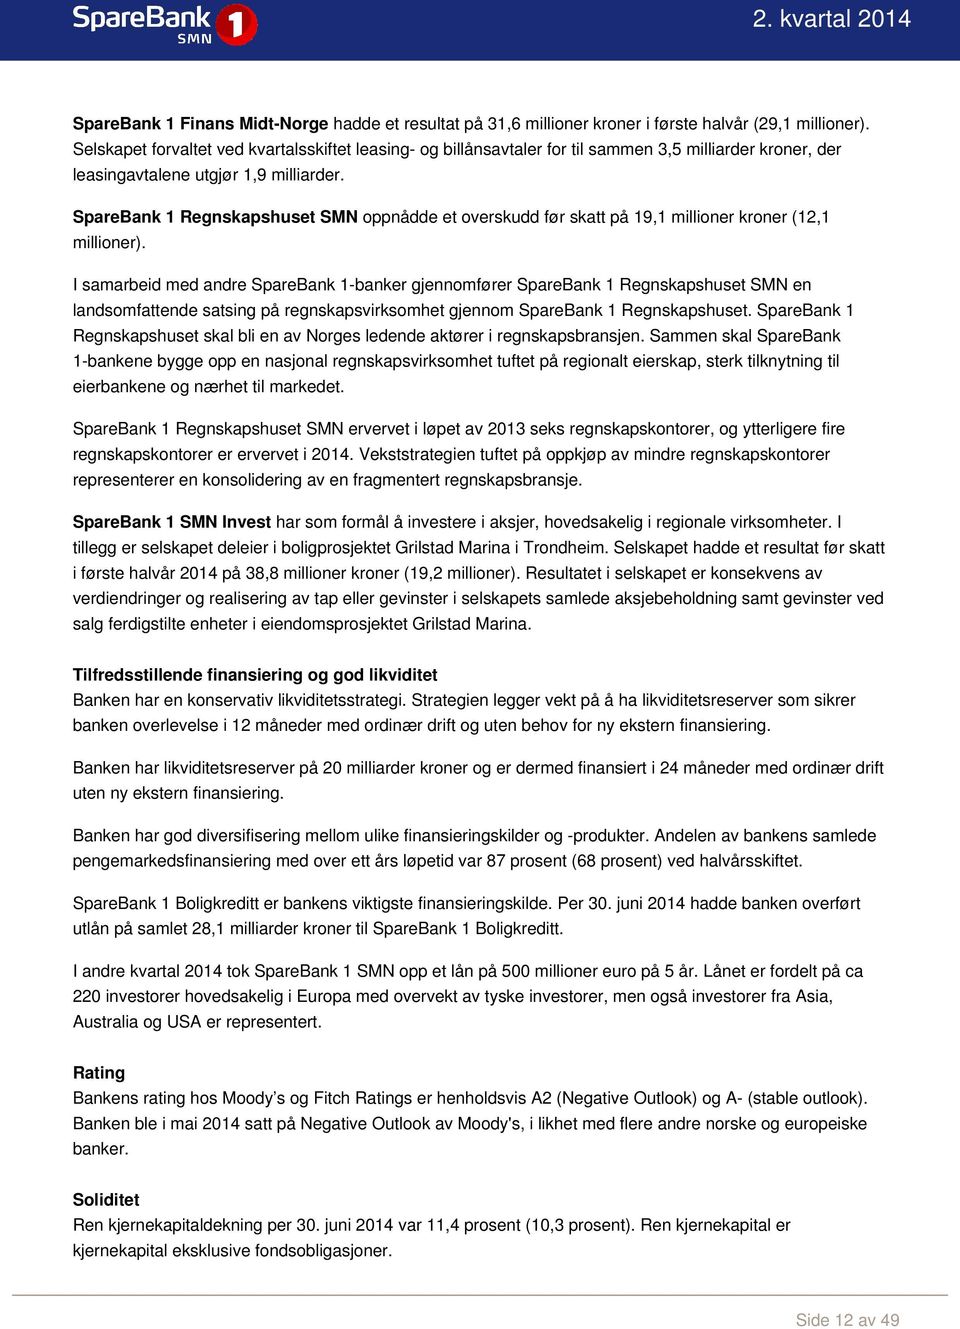 SpareBank 1 Regnskapshuset SMN oppnådde et overskudd før skatt på 19,1 millioner kroner (12,1 millioner).